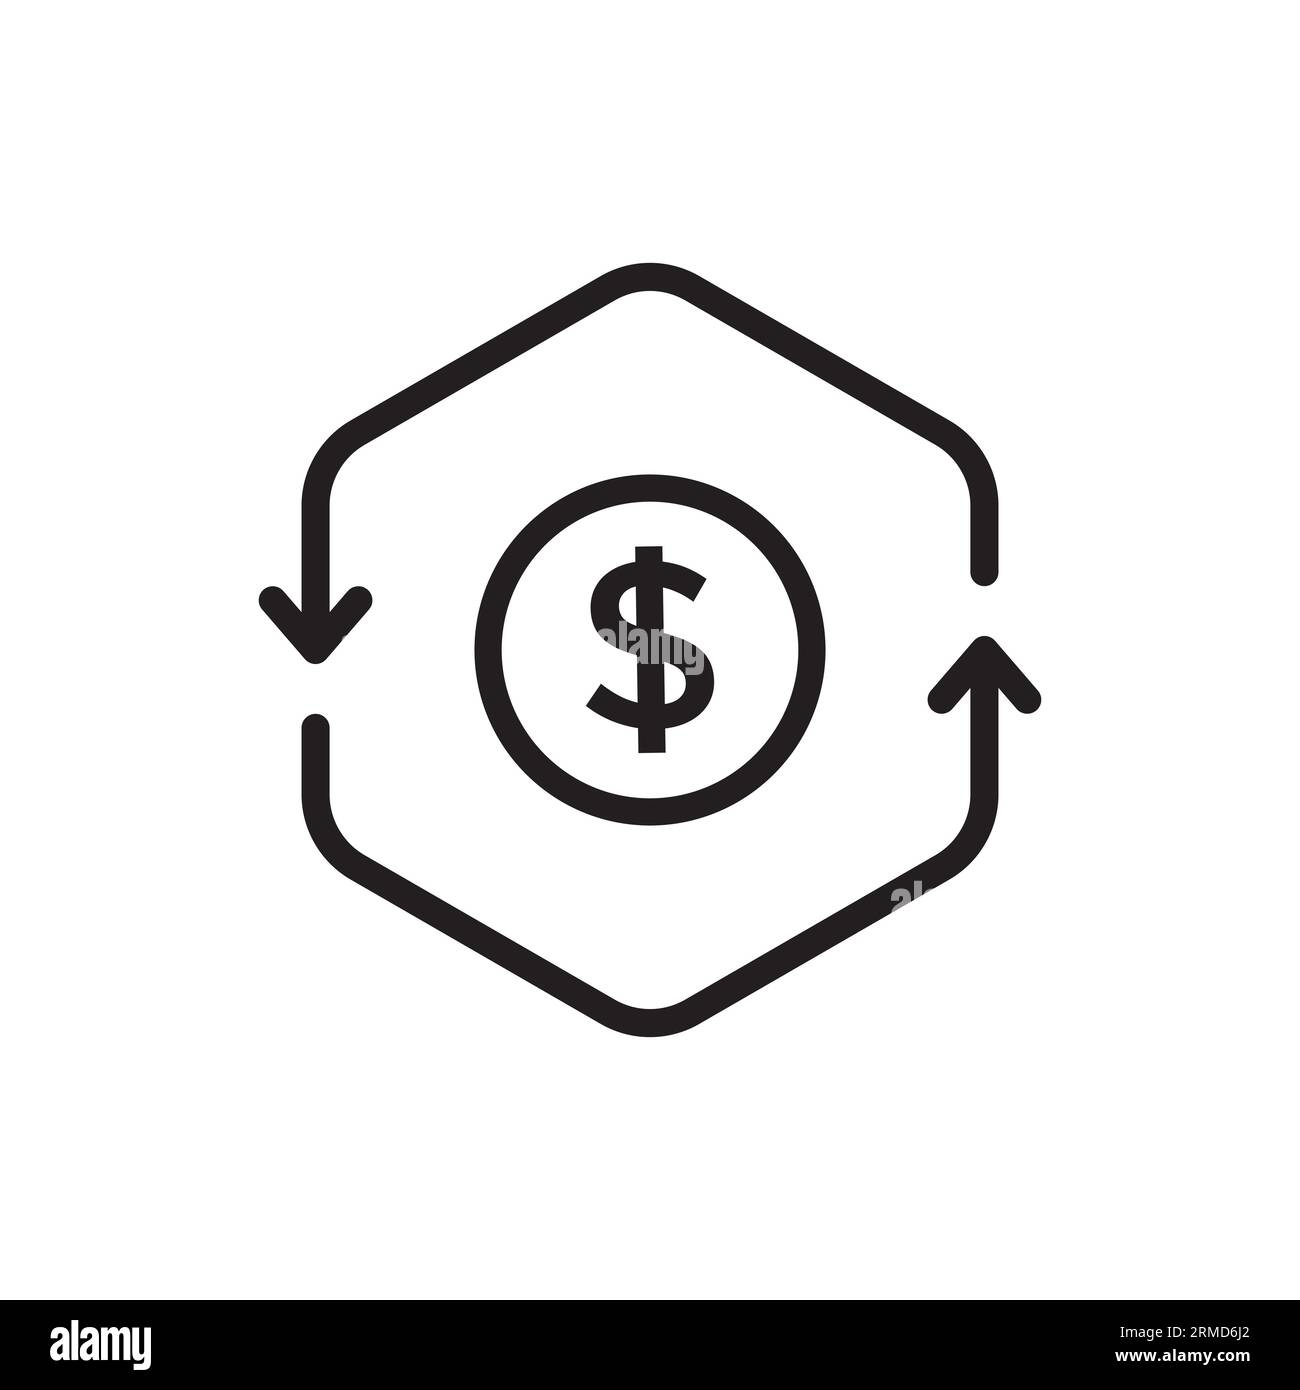 Symbol für schlanken Cashflow oder Transaktion. Flacher Schlagtrend modernes lineares Cashflow-Logotyp-Grafikdesign isoliert auf weißem Hintergrund. Konzept o Stock Vektor